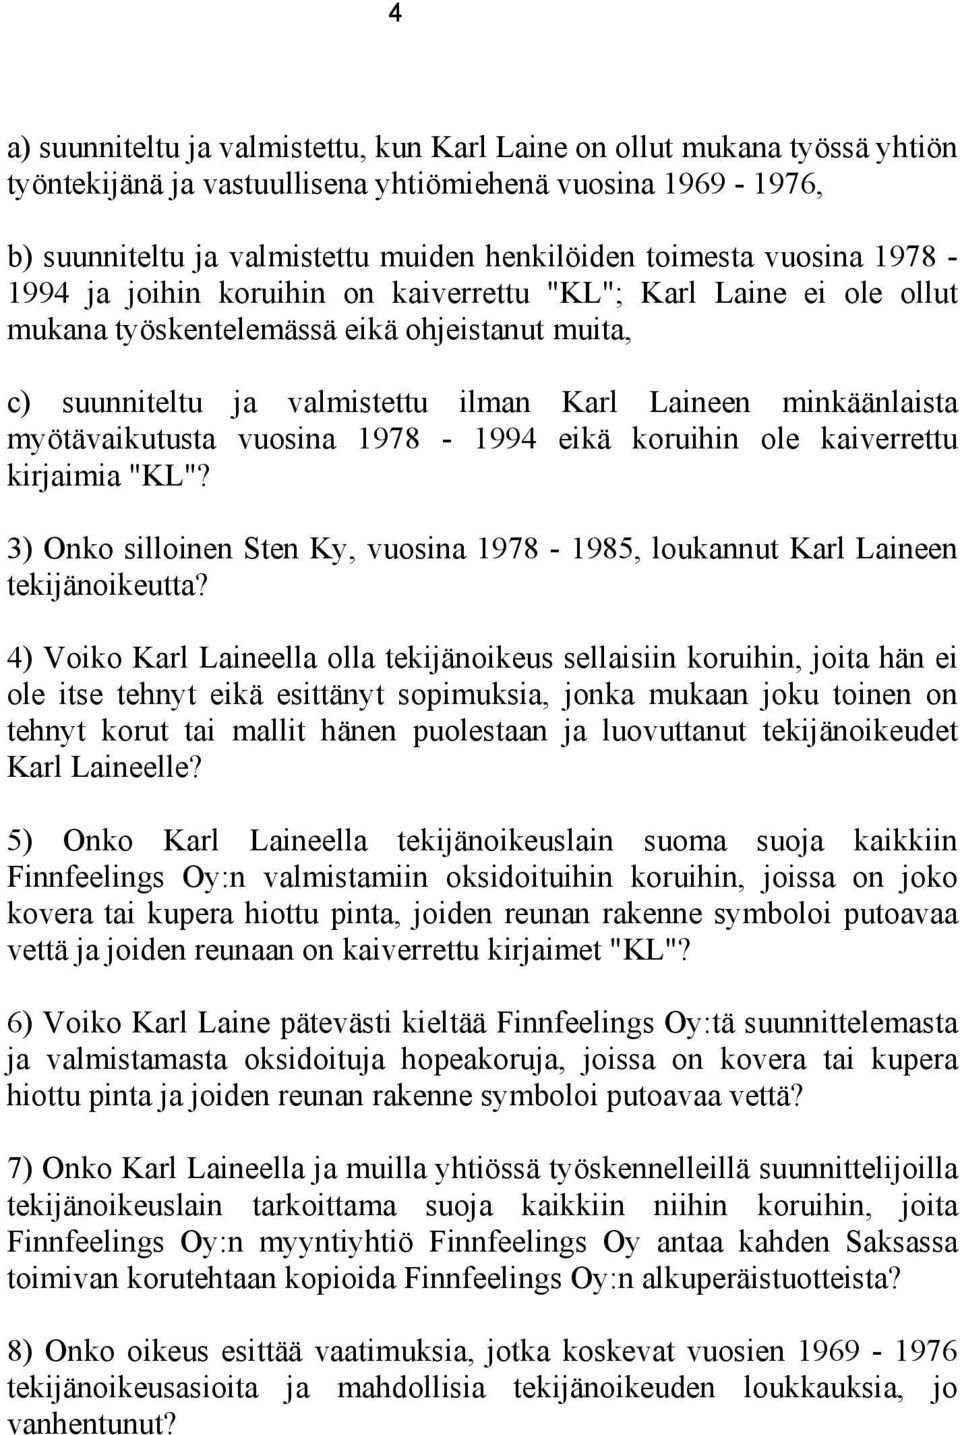 myötävaikutusta vuosina 1978-1994 eikä koruihin ole kaiverrettu kirjaimia "KL"? 3) Onko silloinen Sten Ky, vuosina 1978-1985, loukannut Karl Laineen tekijänoikeutta?